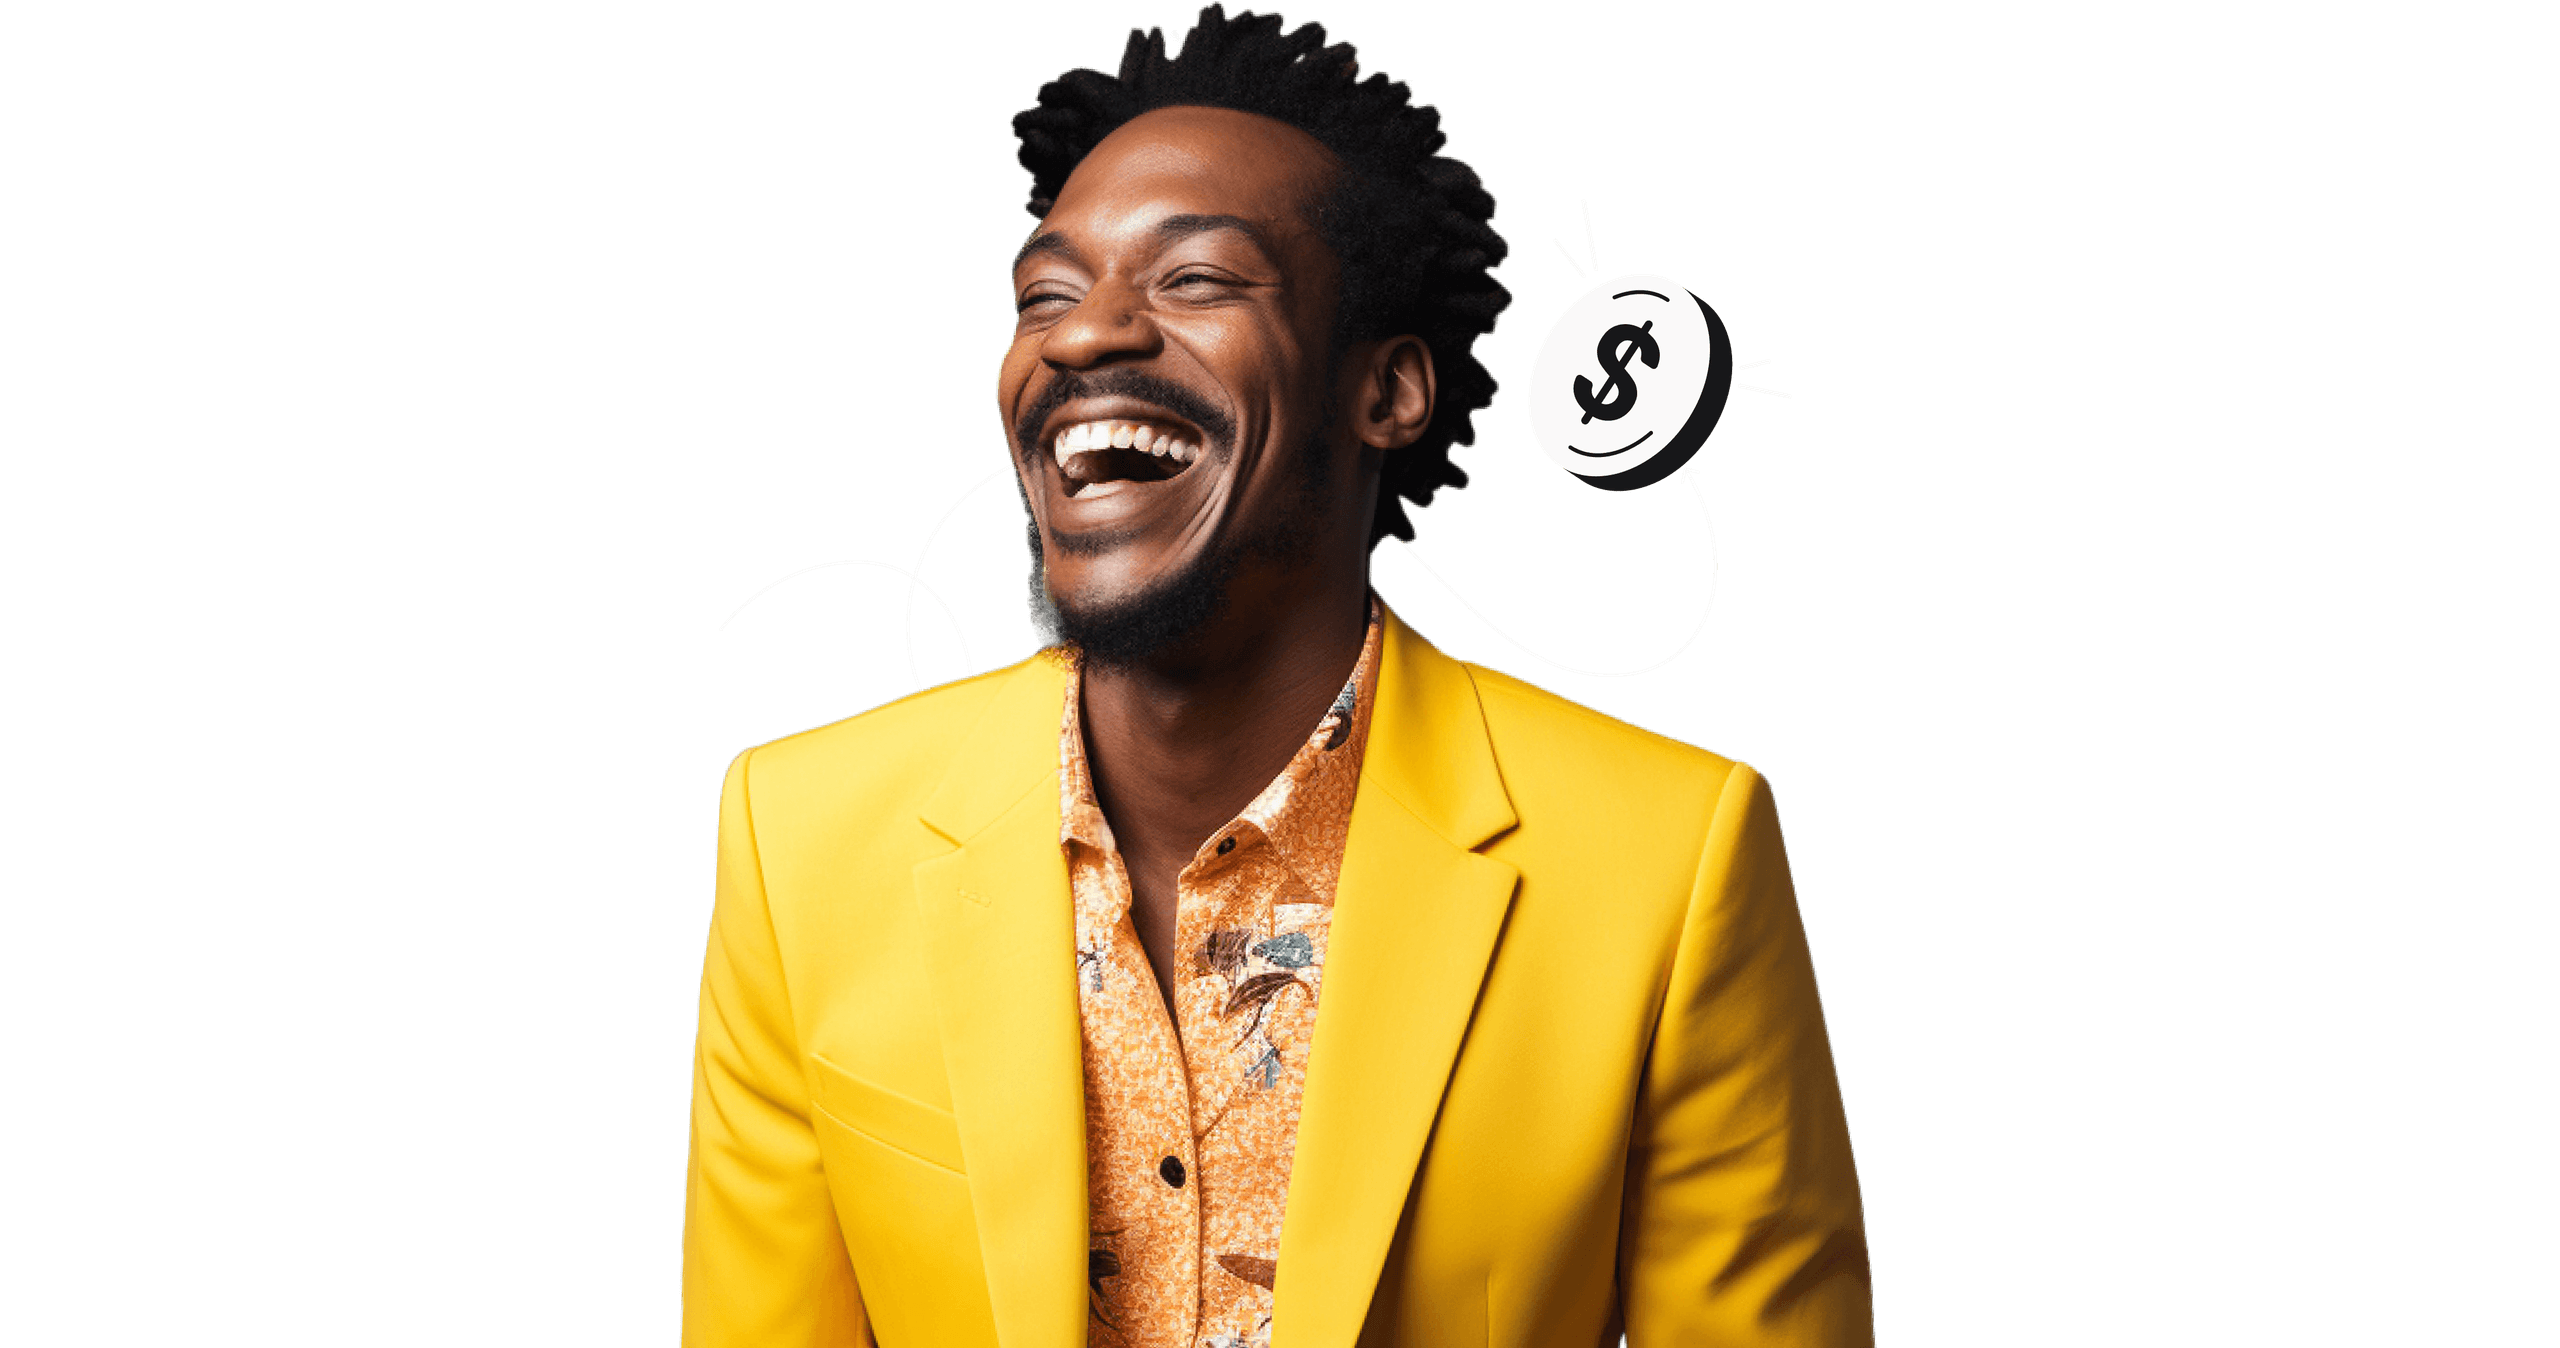 Een lachende man in een gele jas.